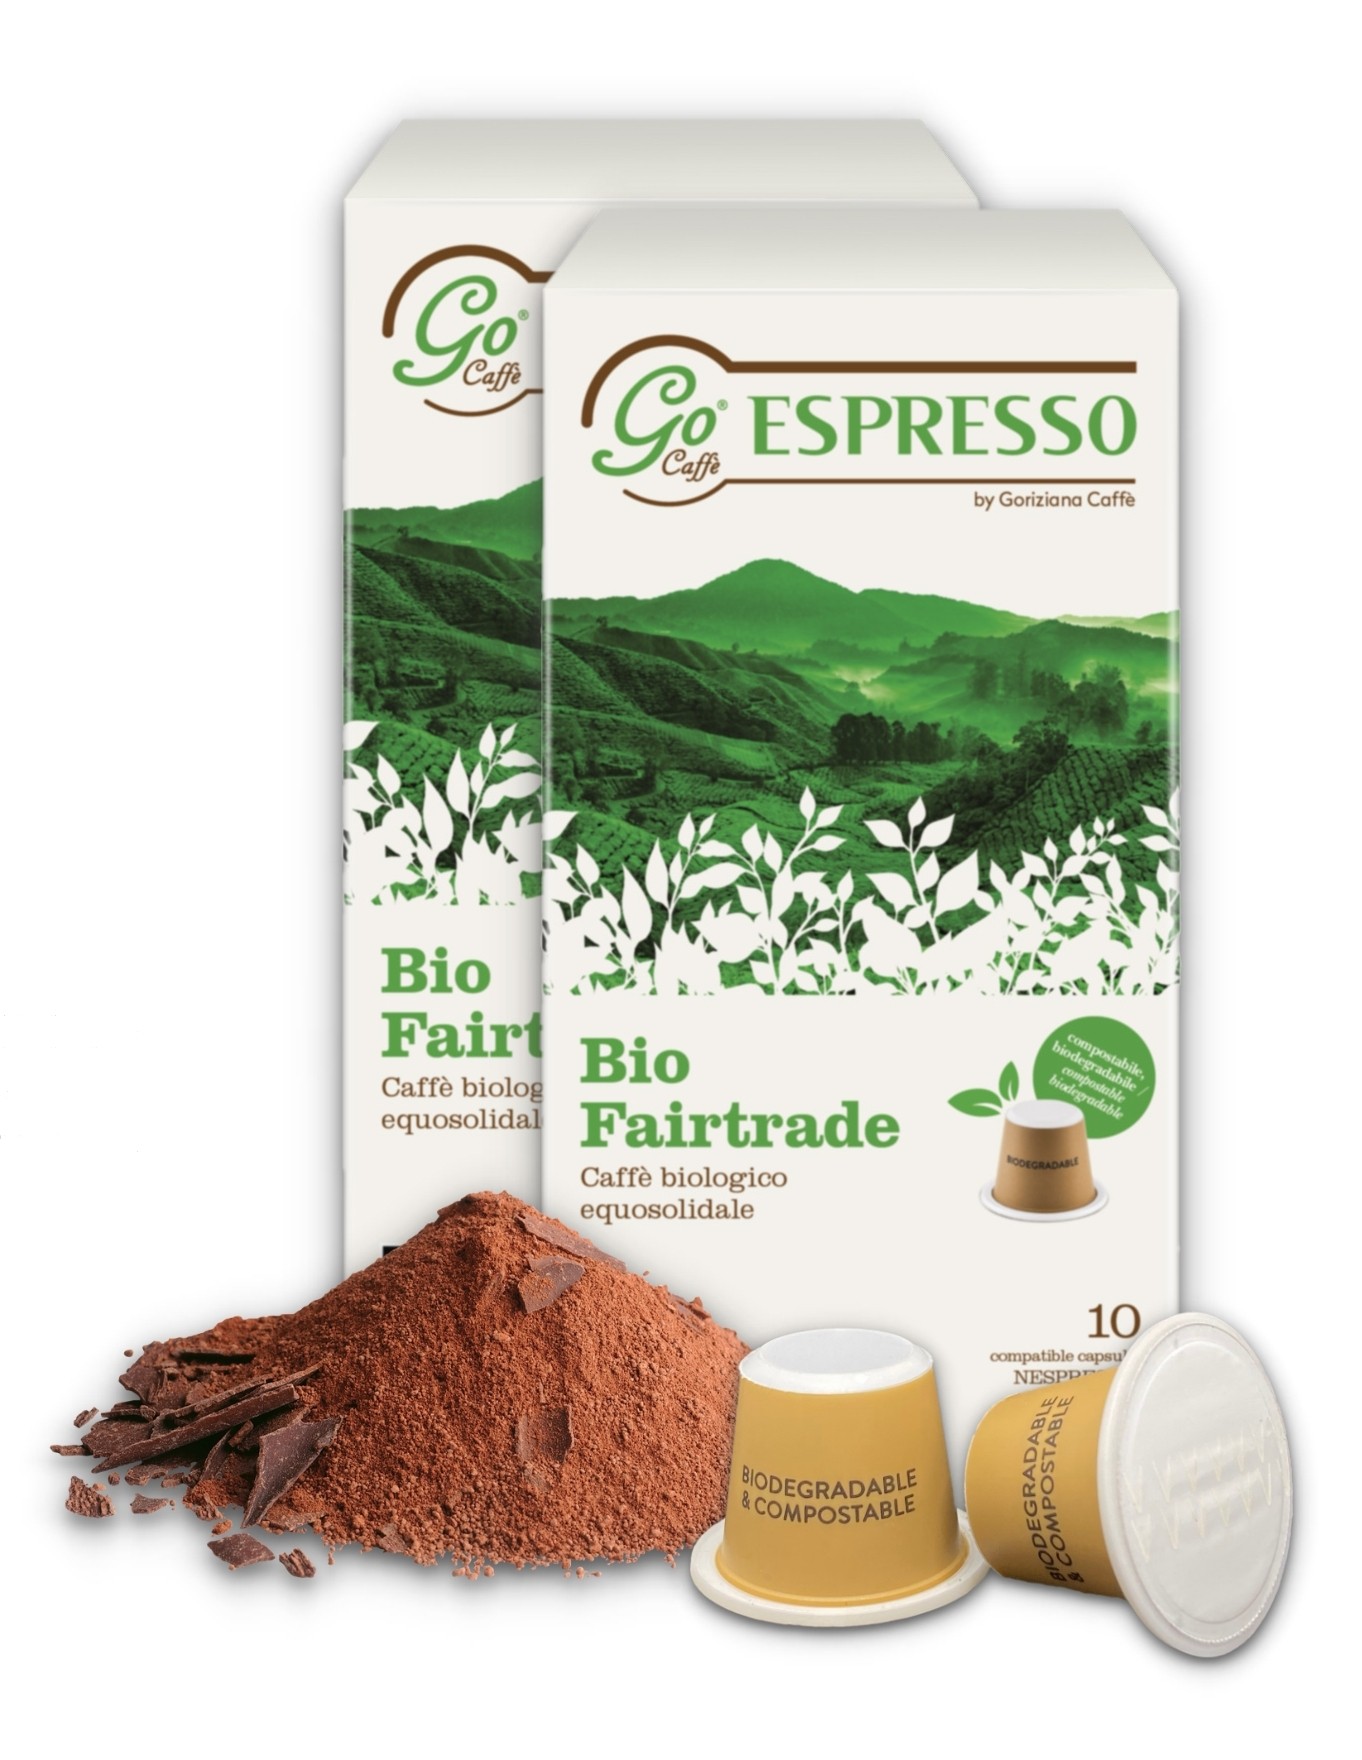 Go Espresso Bio Fairtrade